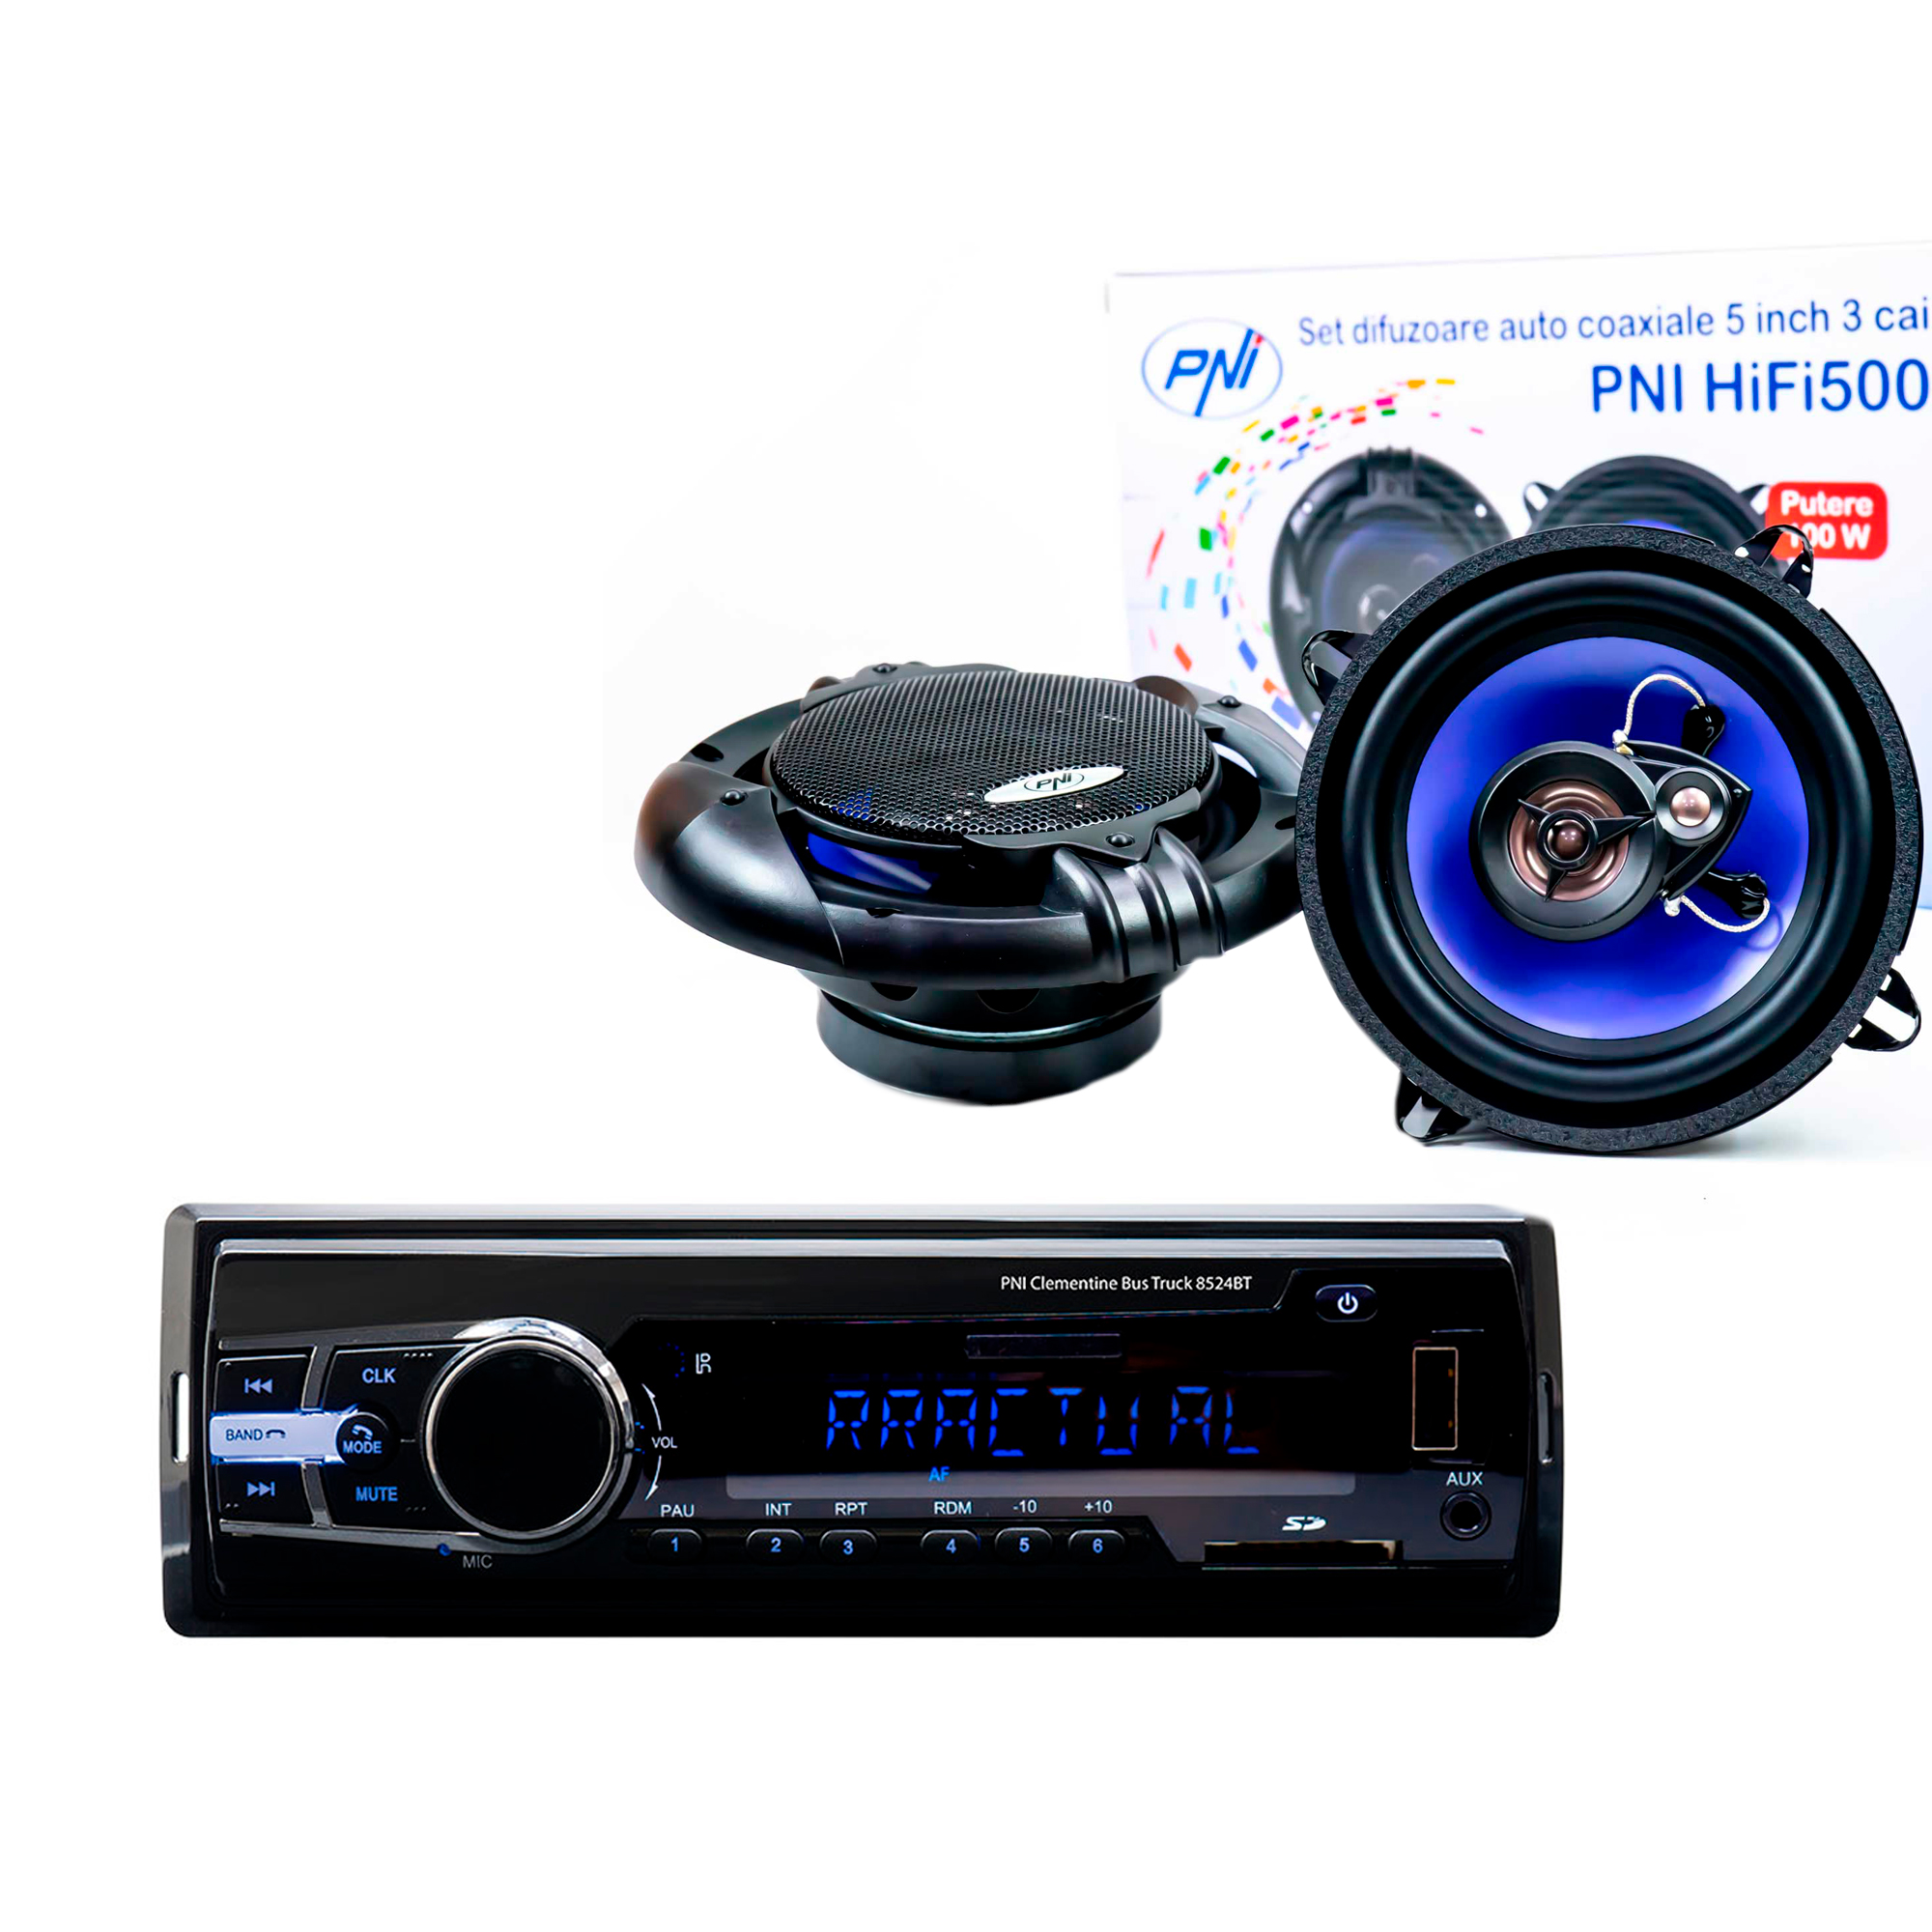 Pachet Radio MP3 player auto PNI Clementine 8524BT 4x45w + Difuzoare auto coaxiale PNI HiFi500, 100W, 12.7 cm PNI imagine noua 2022